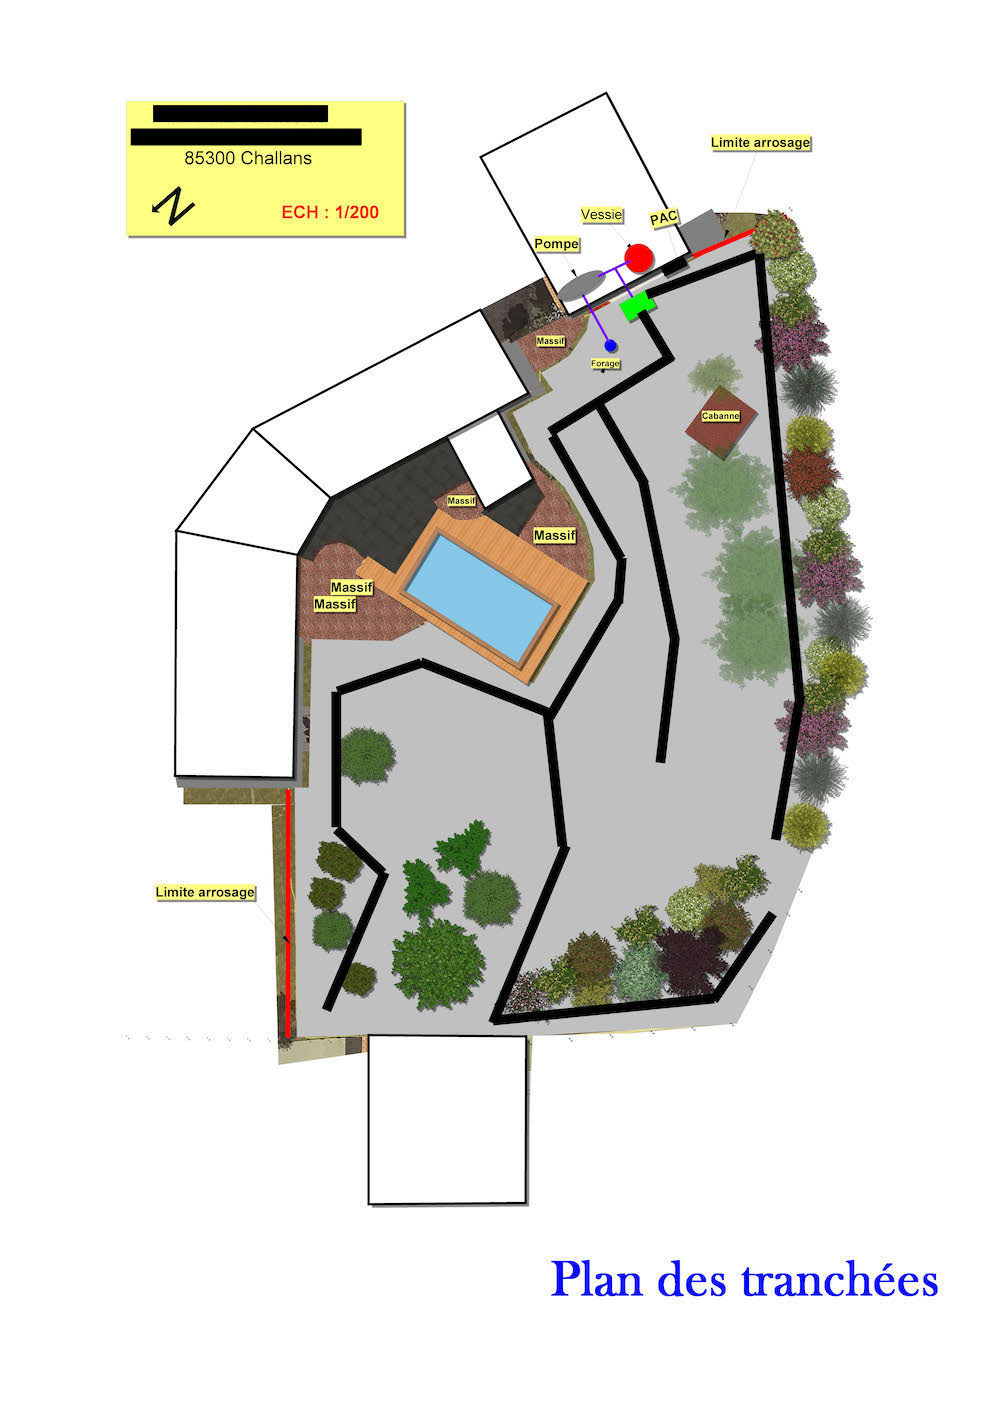 Plan des tranchées - Installation arrosage - Atlantique Garden Staging